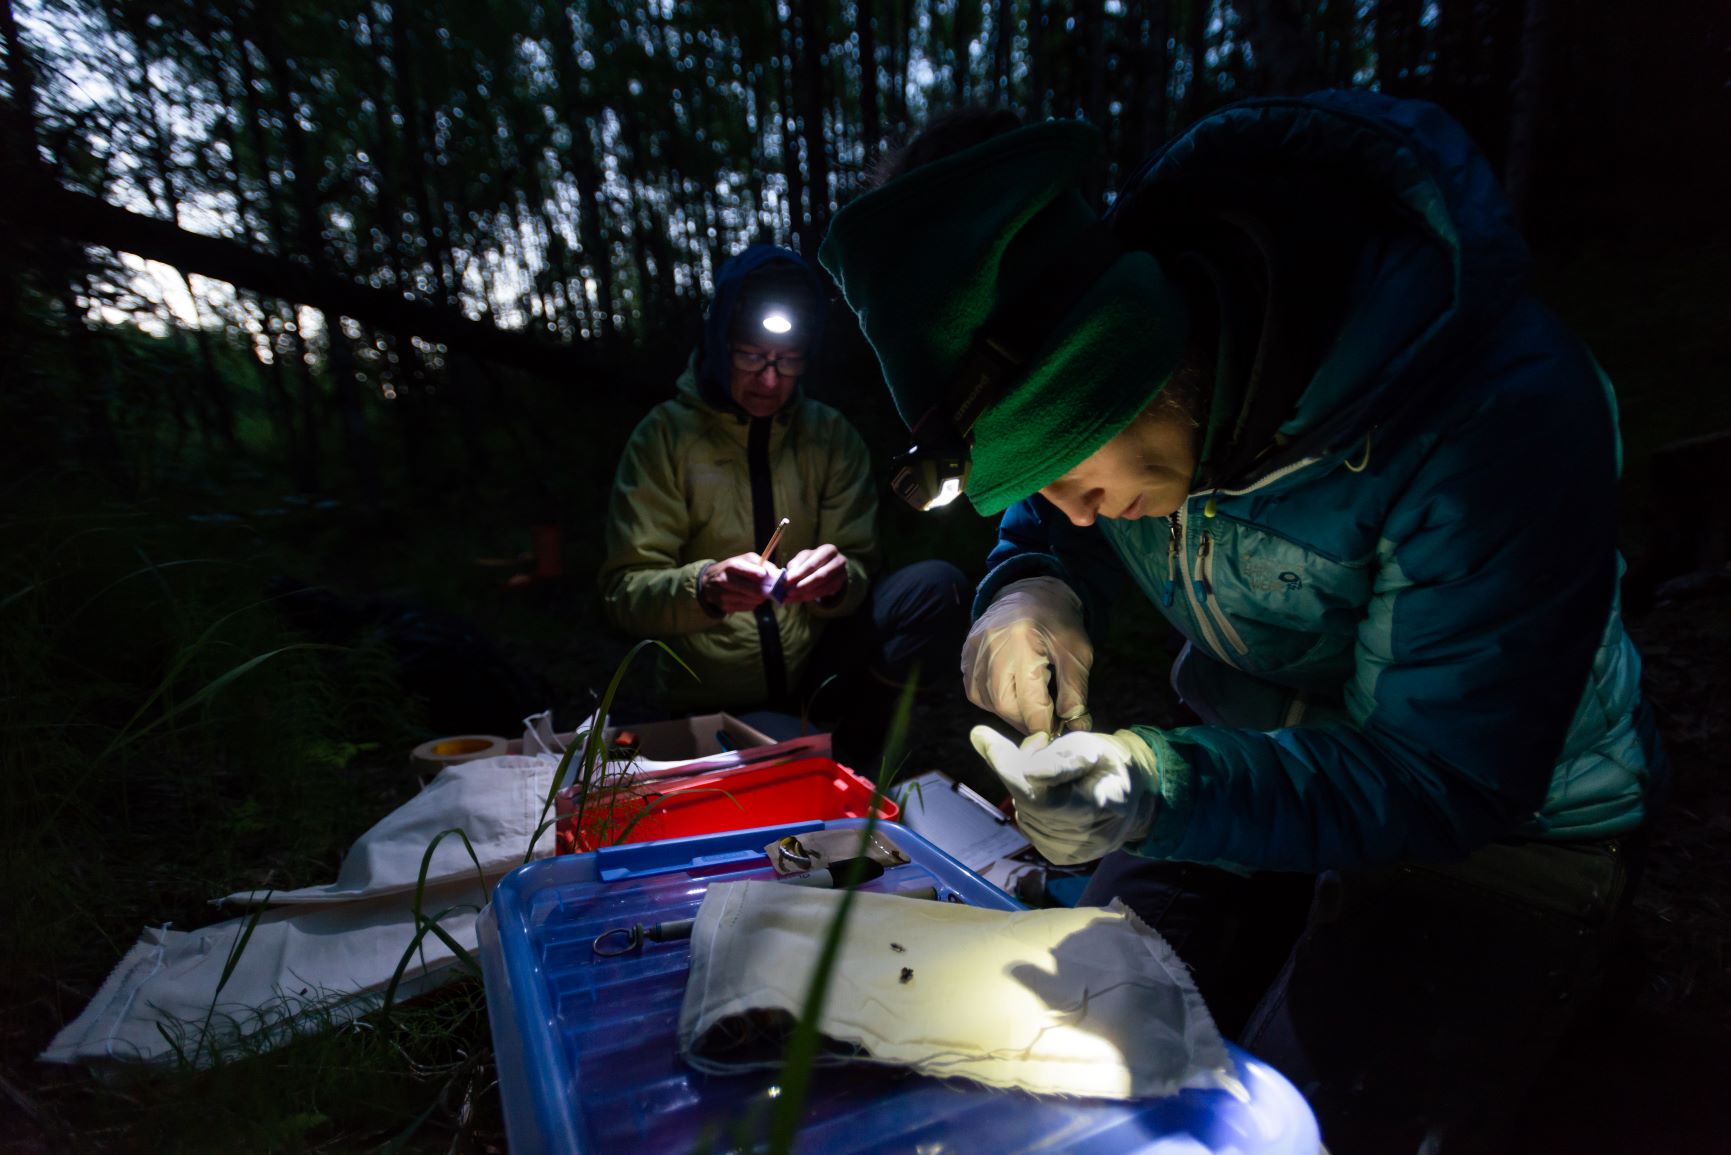 Researchers tag a bat in a dark forest